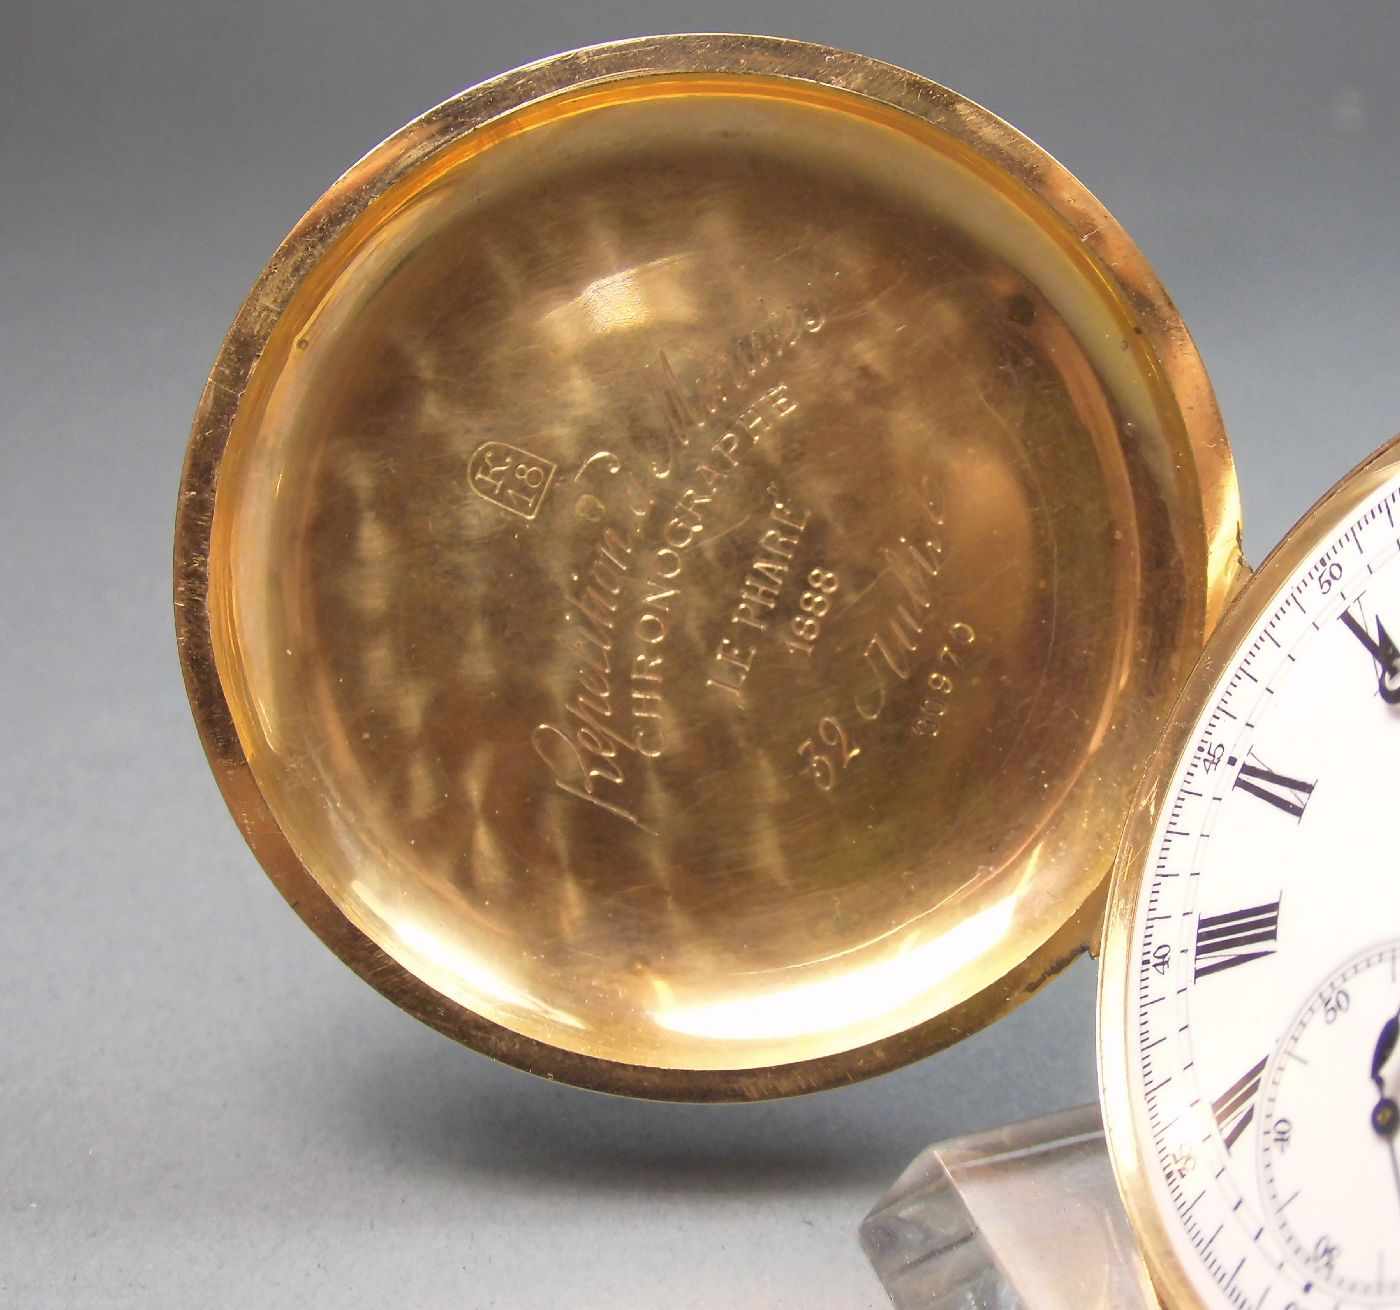 GROSSE GOLD - SAVONETTE, Minutenrepetition mit Chronograf, Taschenuhr / pocket watch, Schweiz, 1888, - Bild 3 aus 7